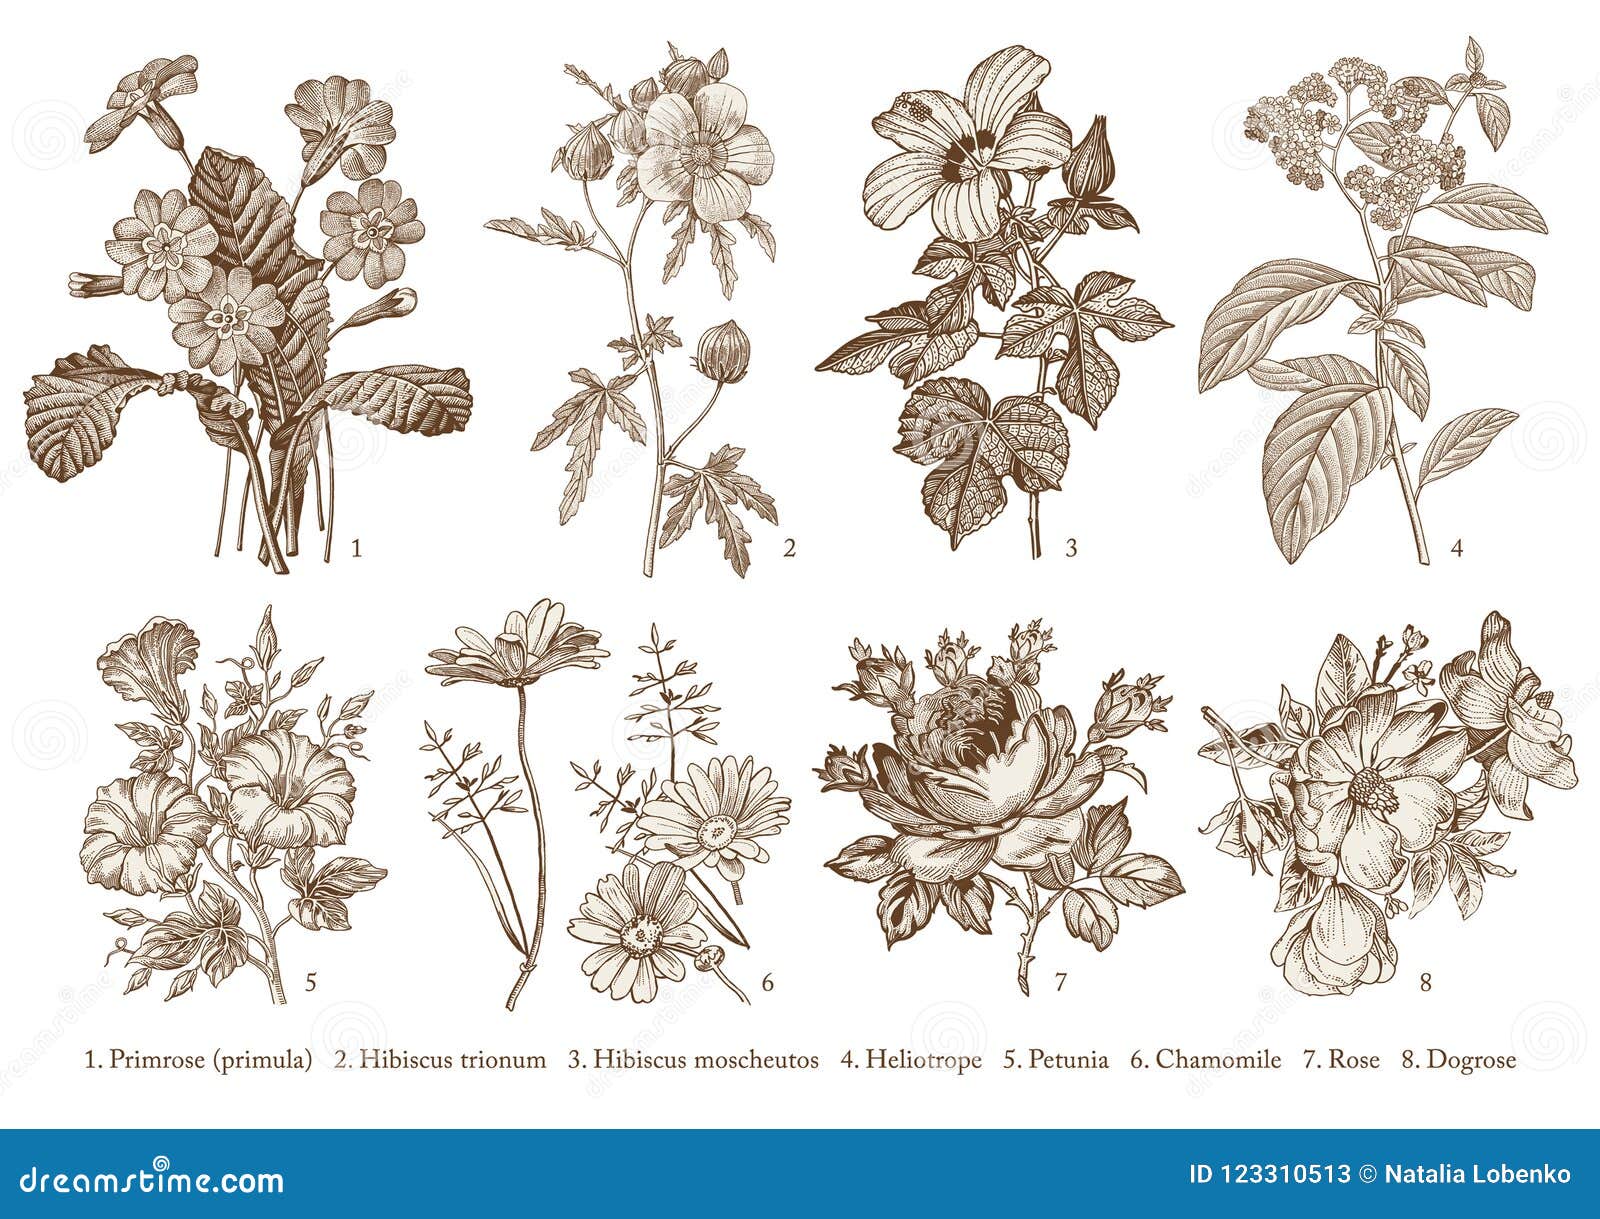 70 Heliotrope Flower Illustrations Illustrations RoyaltyFree Vector  Graphics  Clip Art  iStock